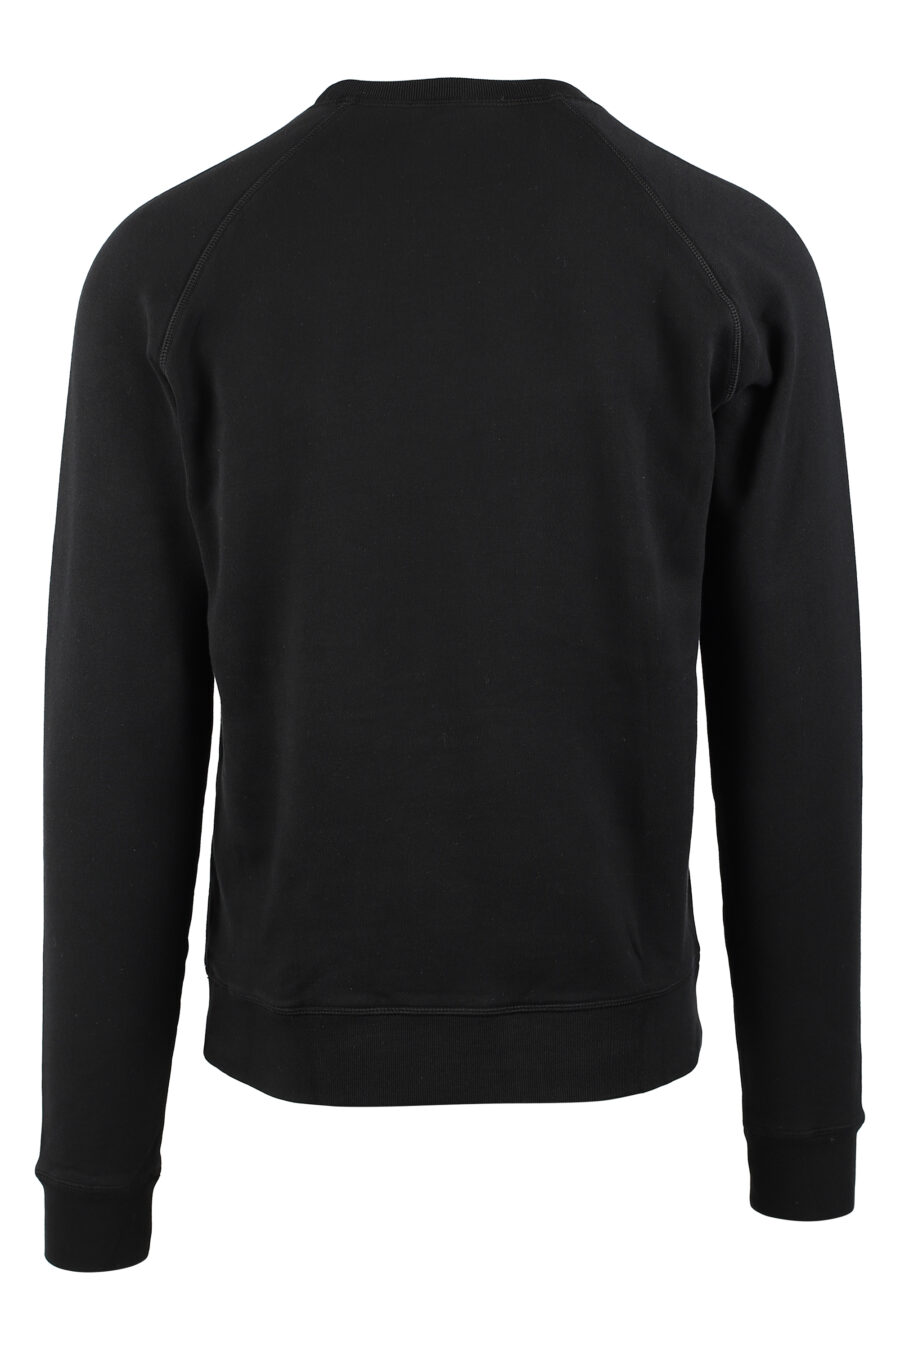 Schwarzes Sweatshirt mit weiß unterlegtem Maxilogo - IMG 0538